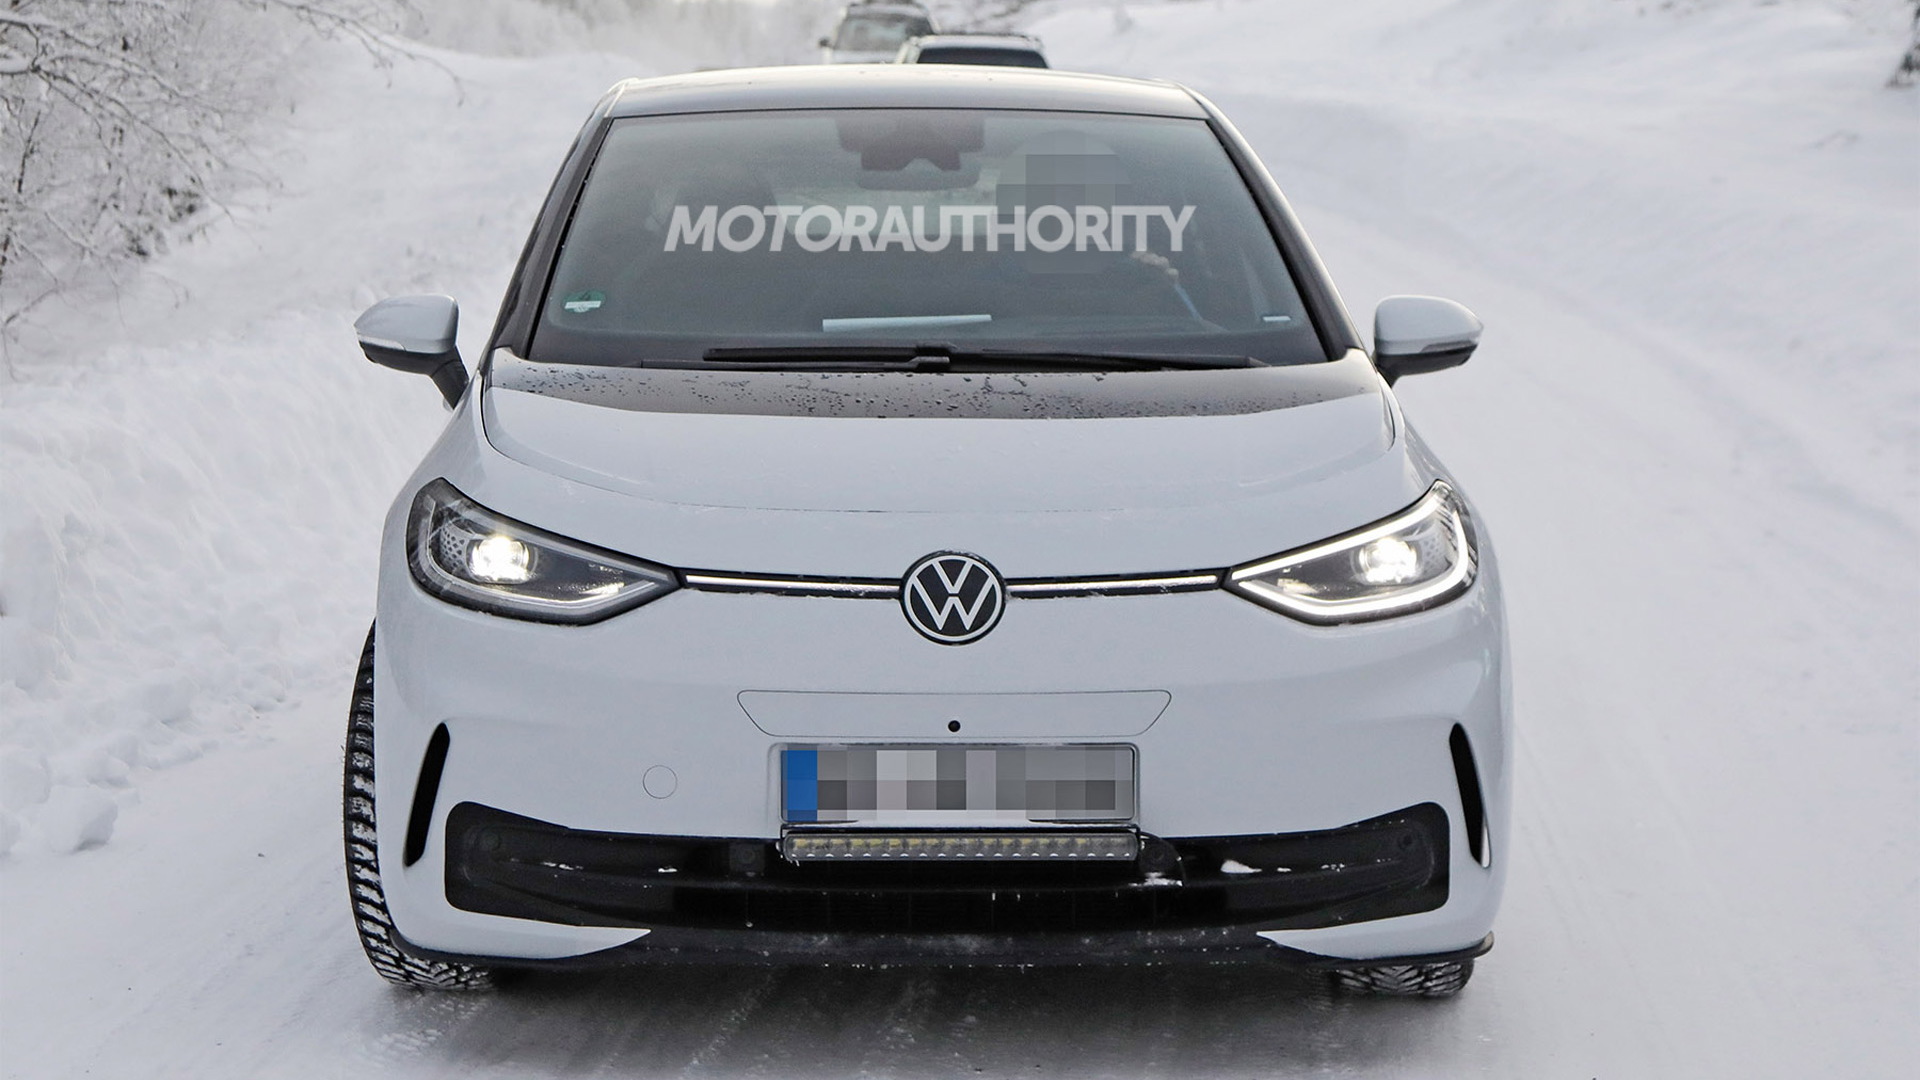 2023 Volkswagen ID.3 facelift spy shots - Photo credit: Baldauf